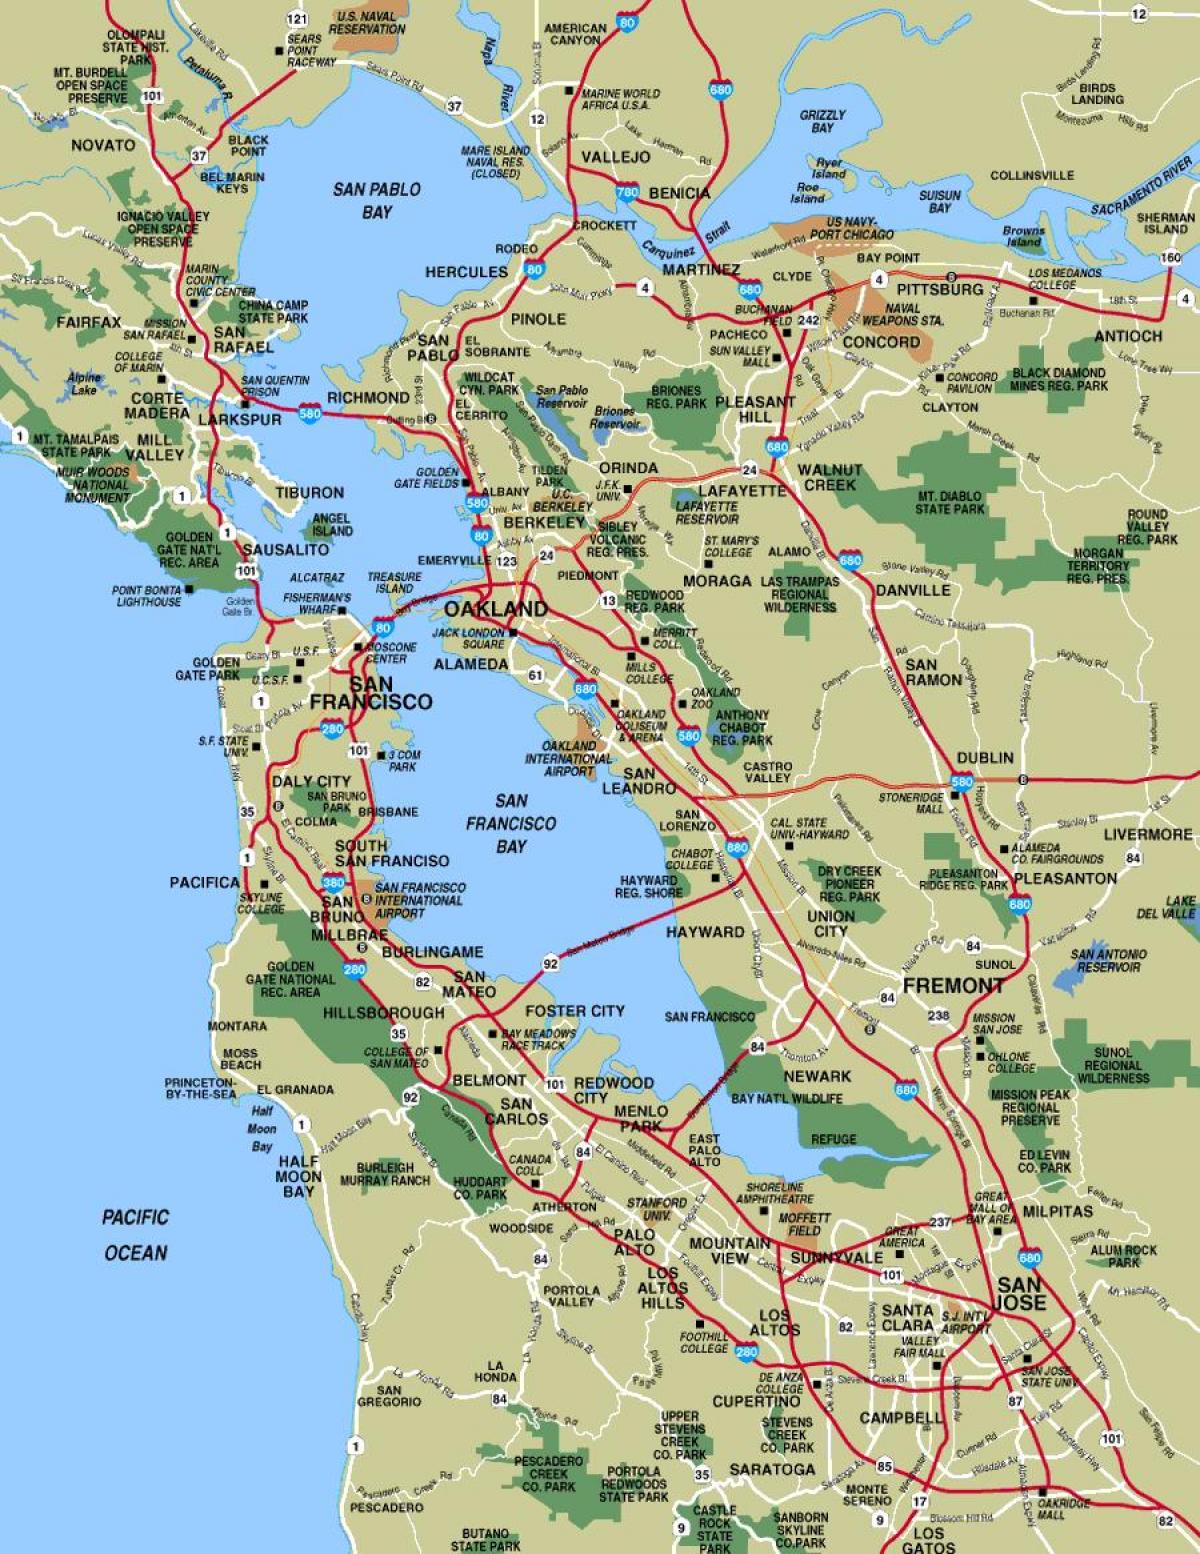 地图的更大的旧金山区